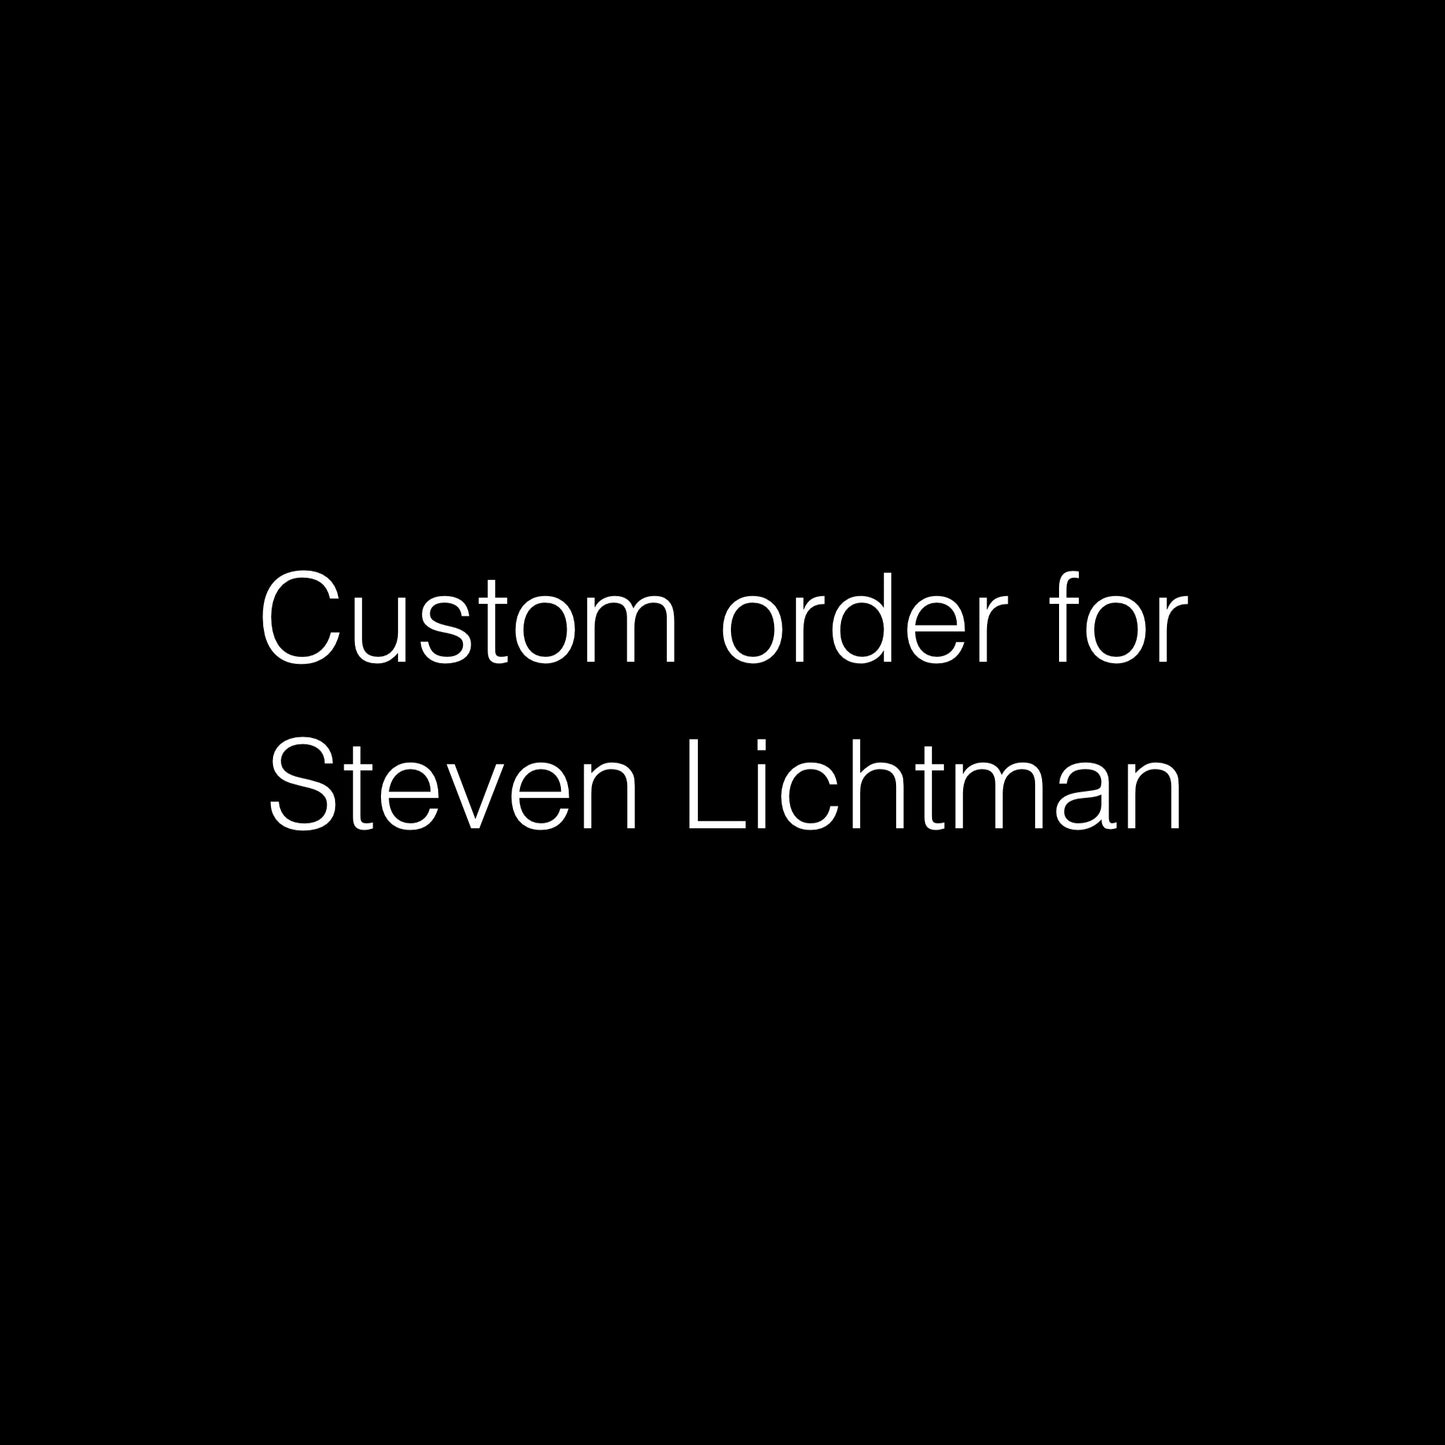 Custom order for Steven Lichtman